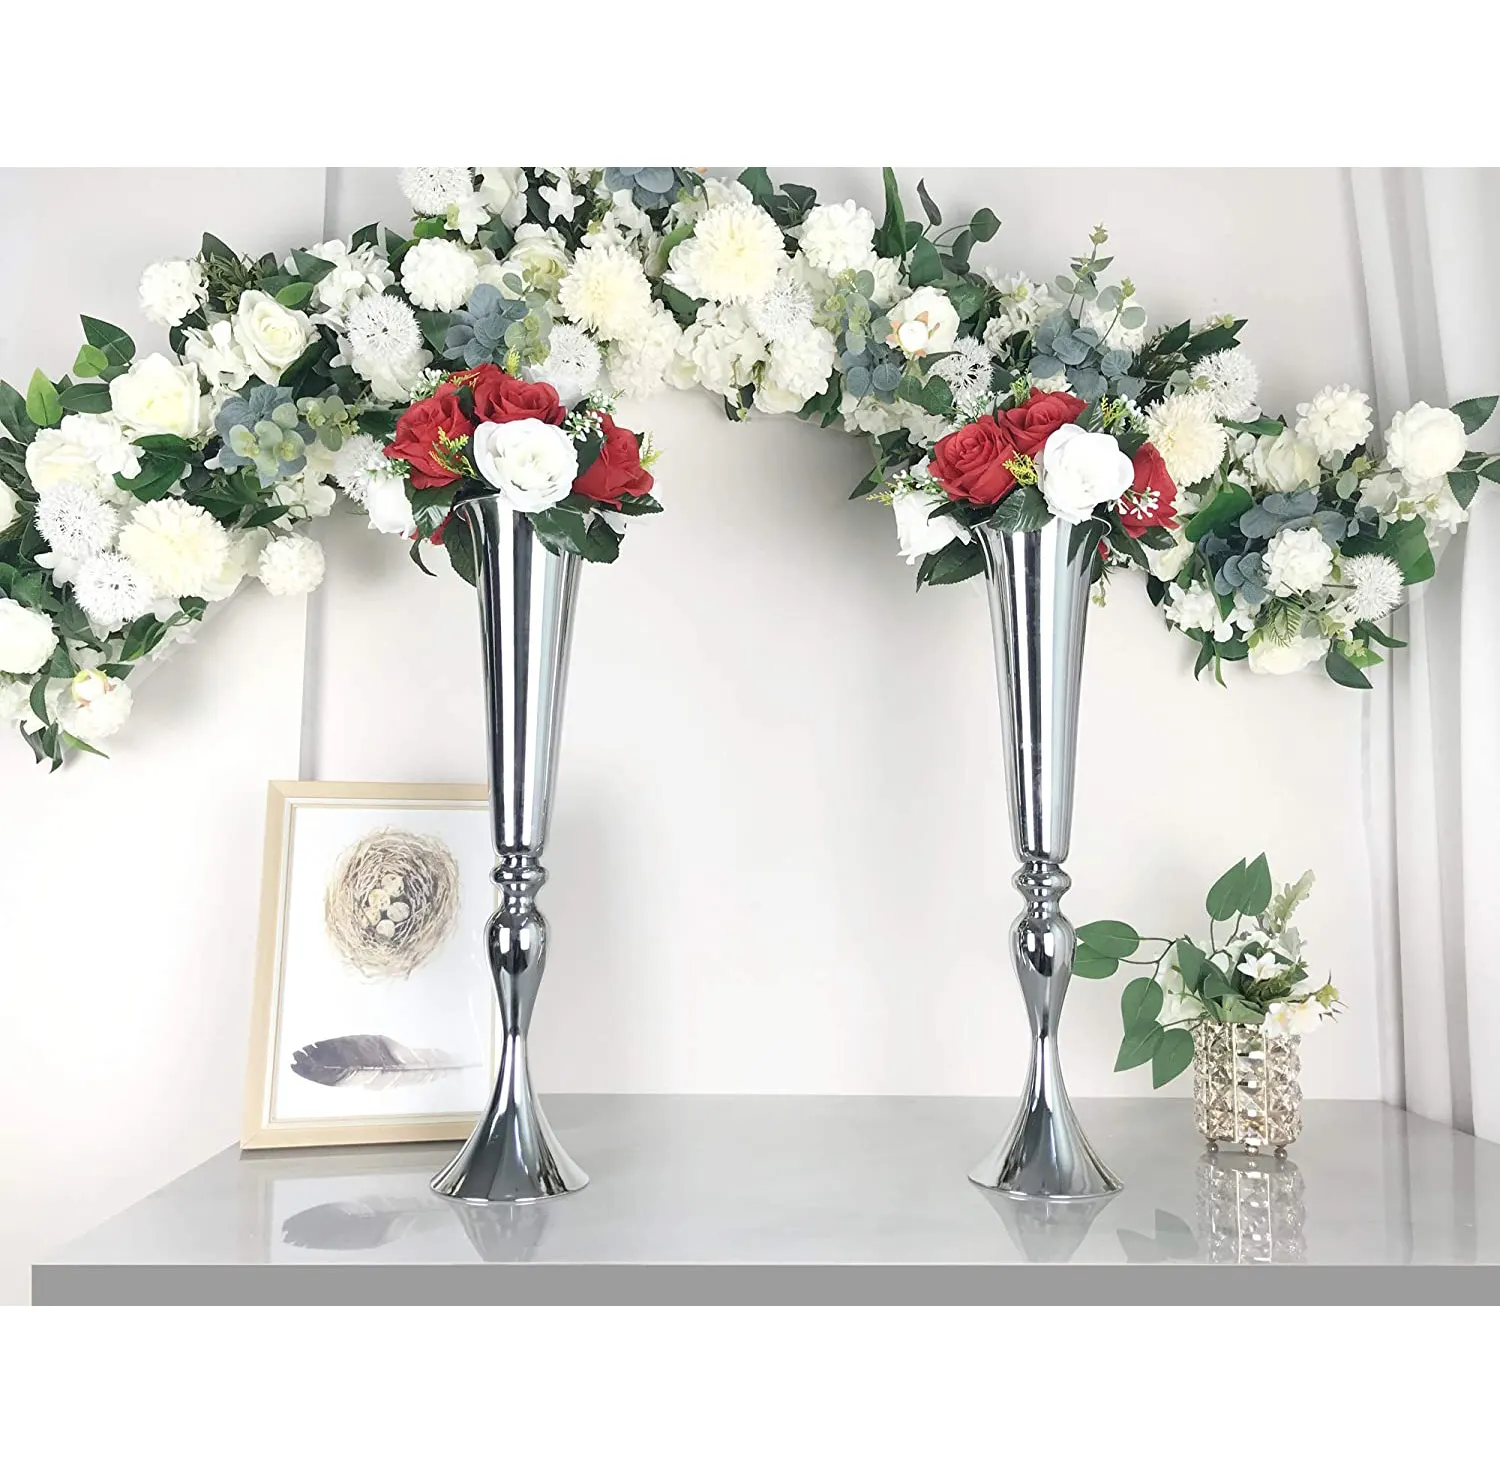 Vaso di fiori in metallo da tavolo vaso floreale in argento per tavolo di nozze centrotavola ricevimento festa evento decorazione anniversario